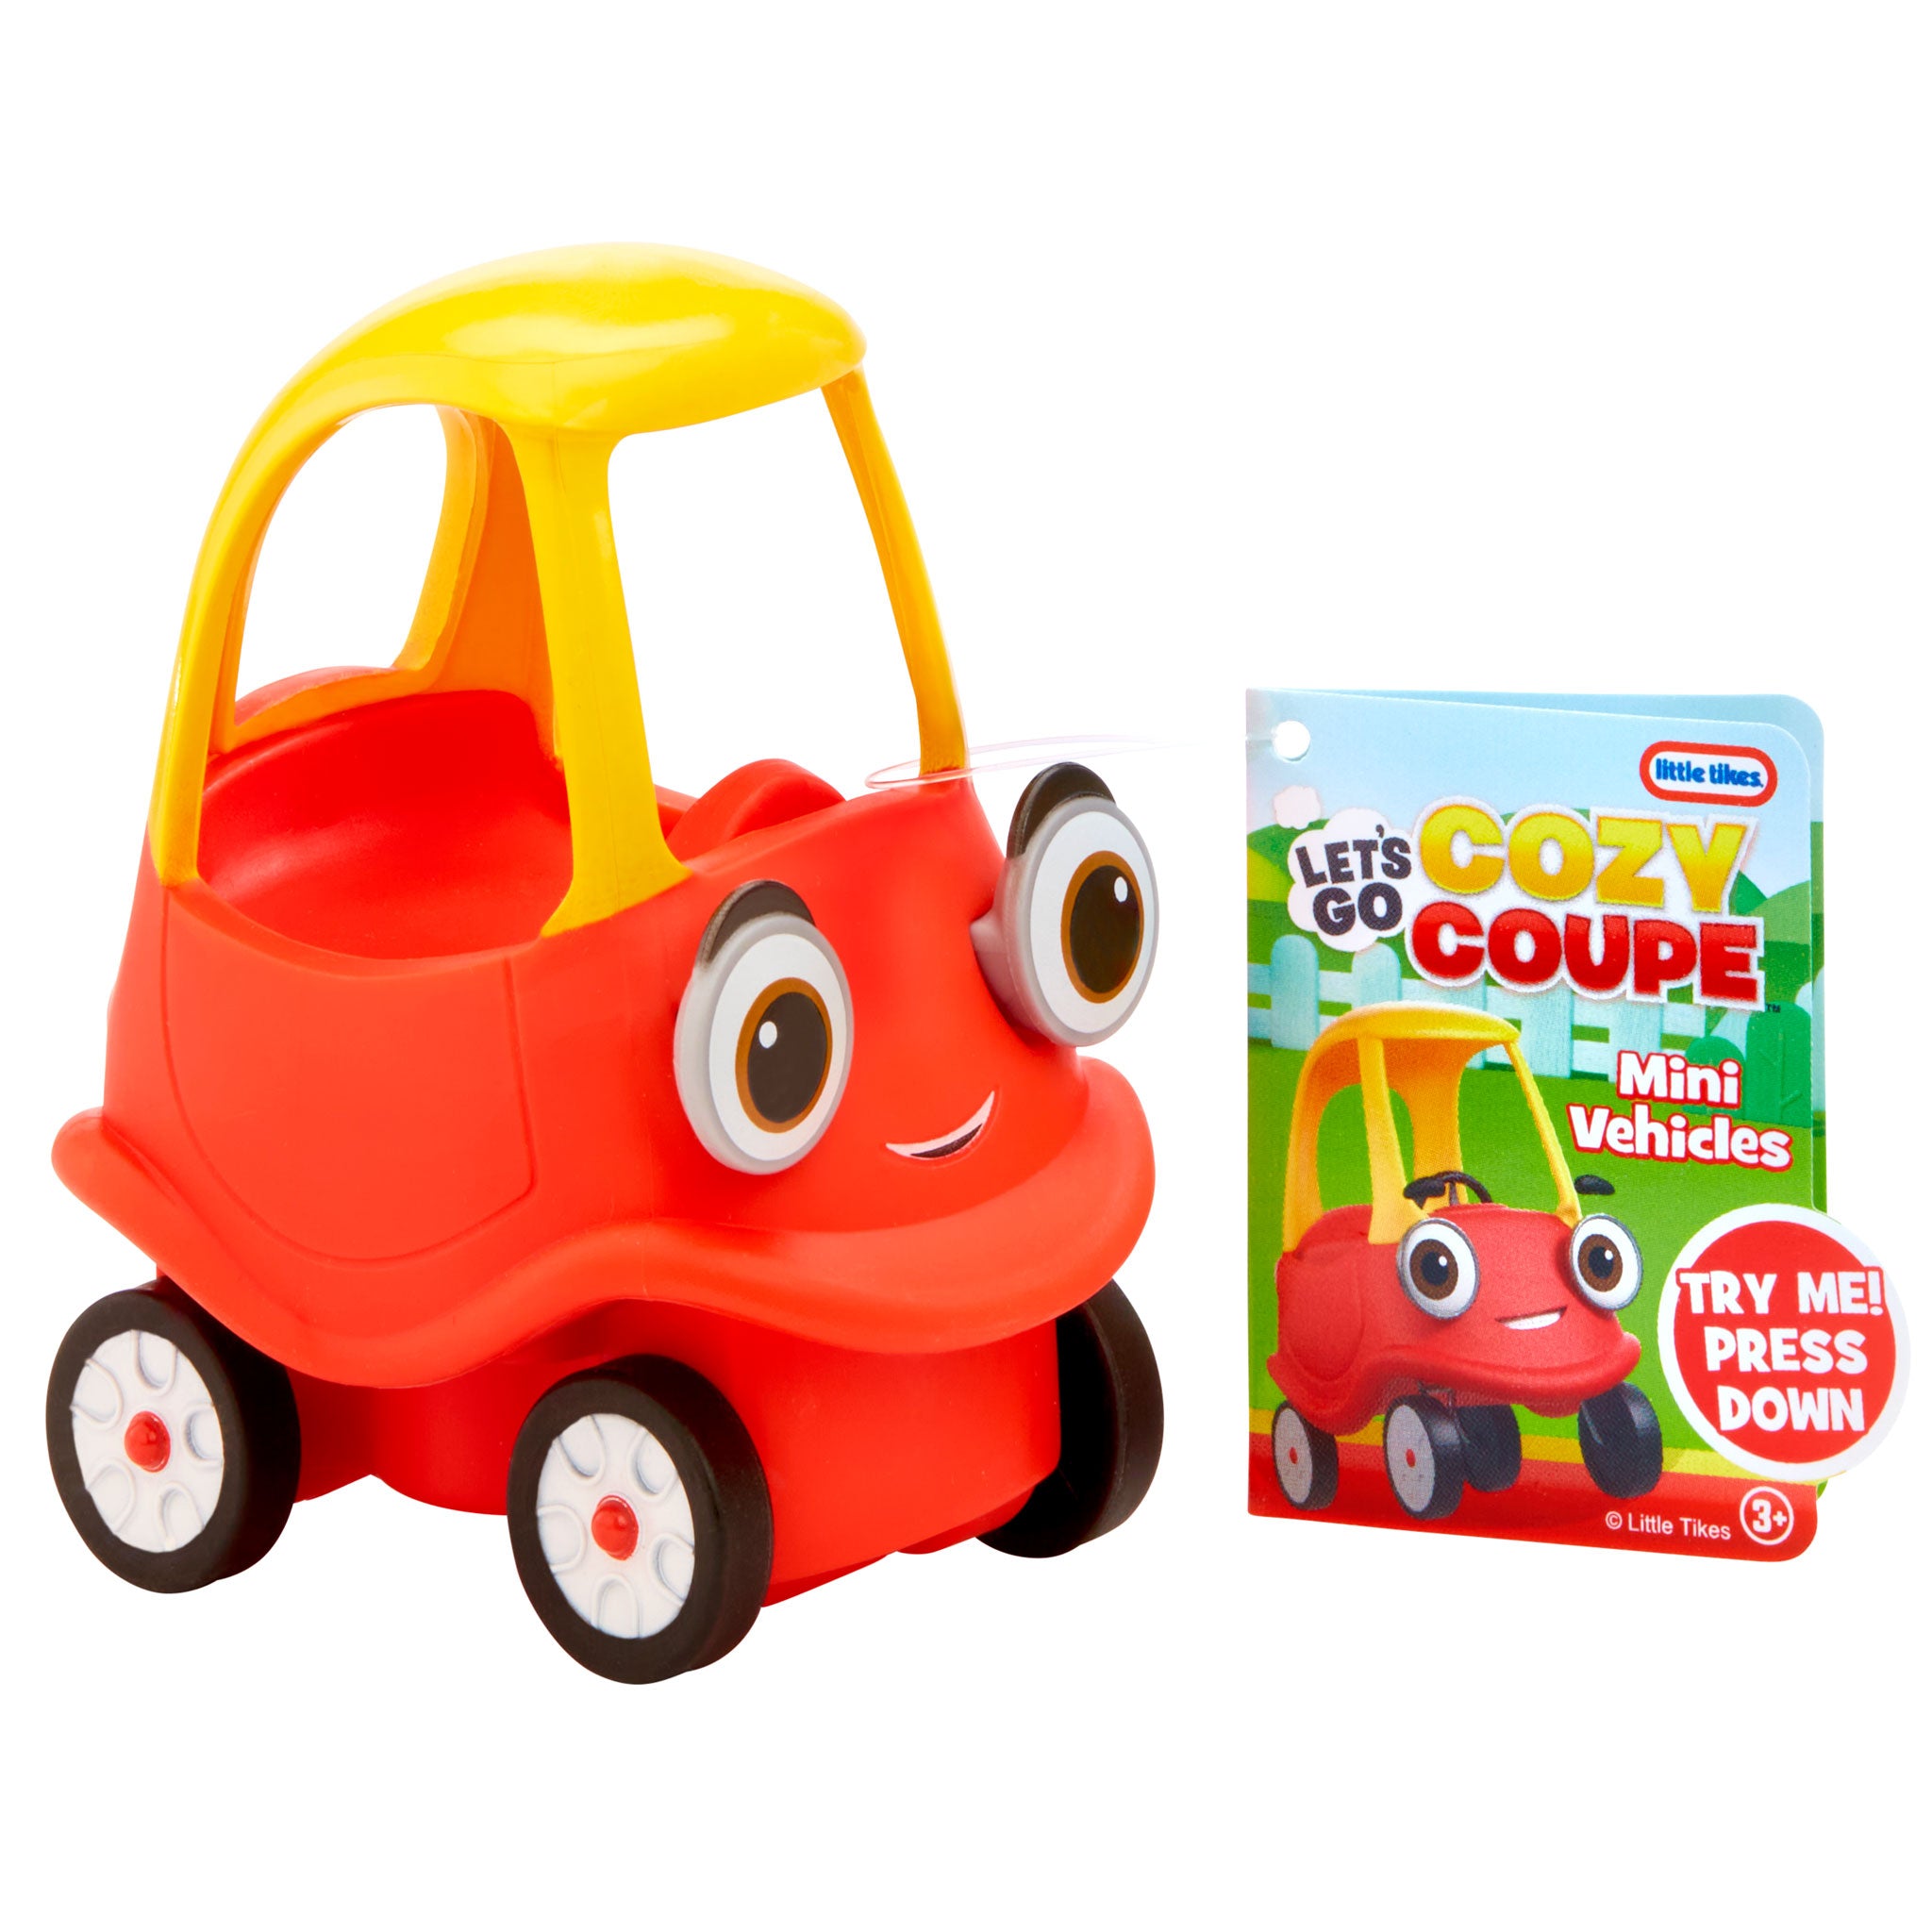 Let's Go Cozy Coupe™- Cozy Mini Vehicle – Official Little Tikes Website